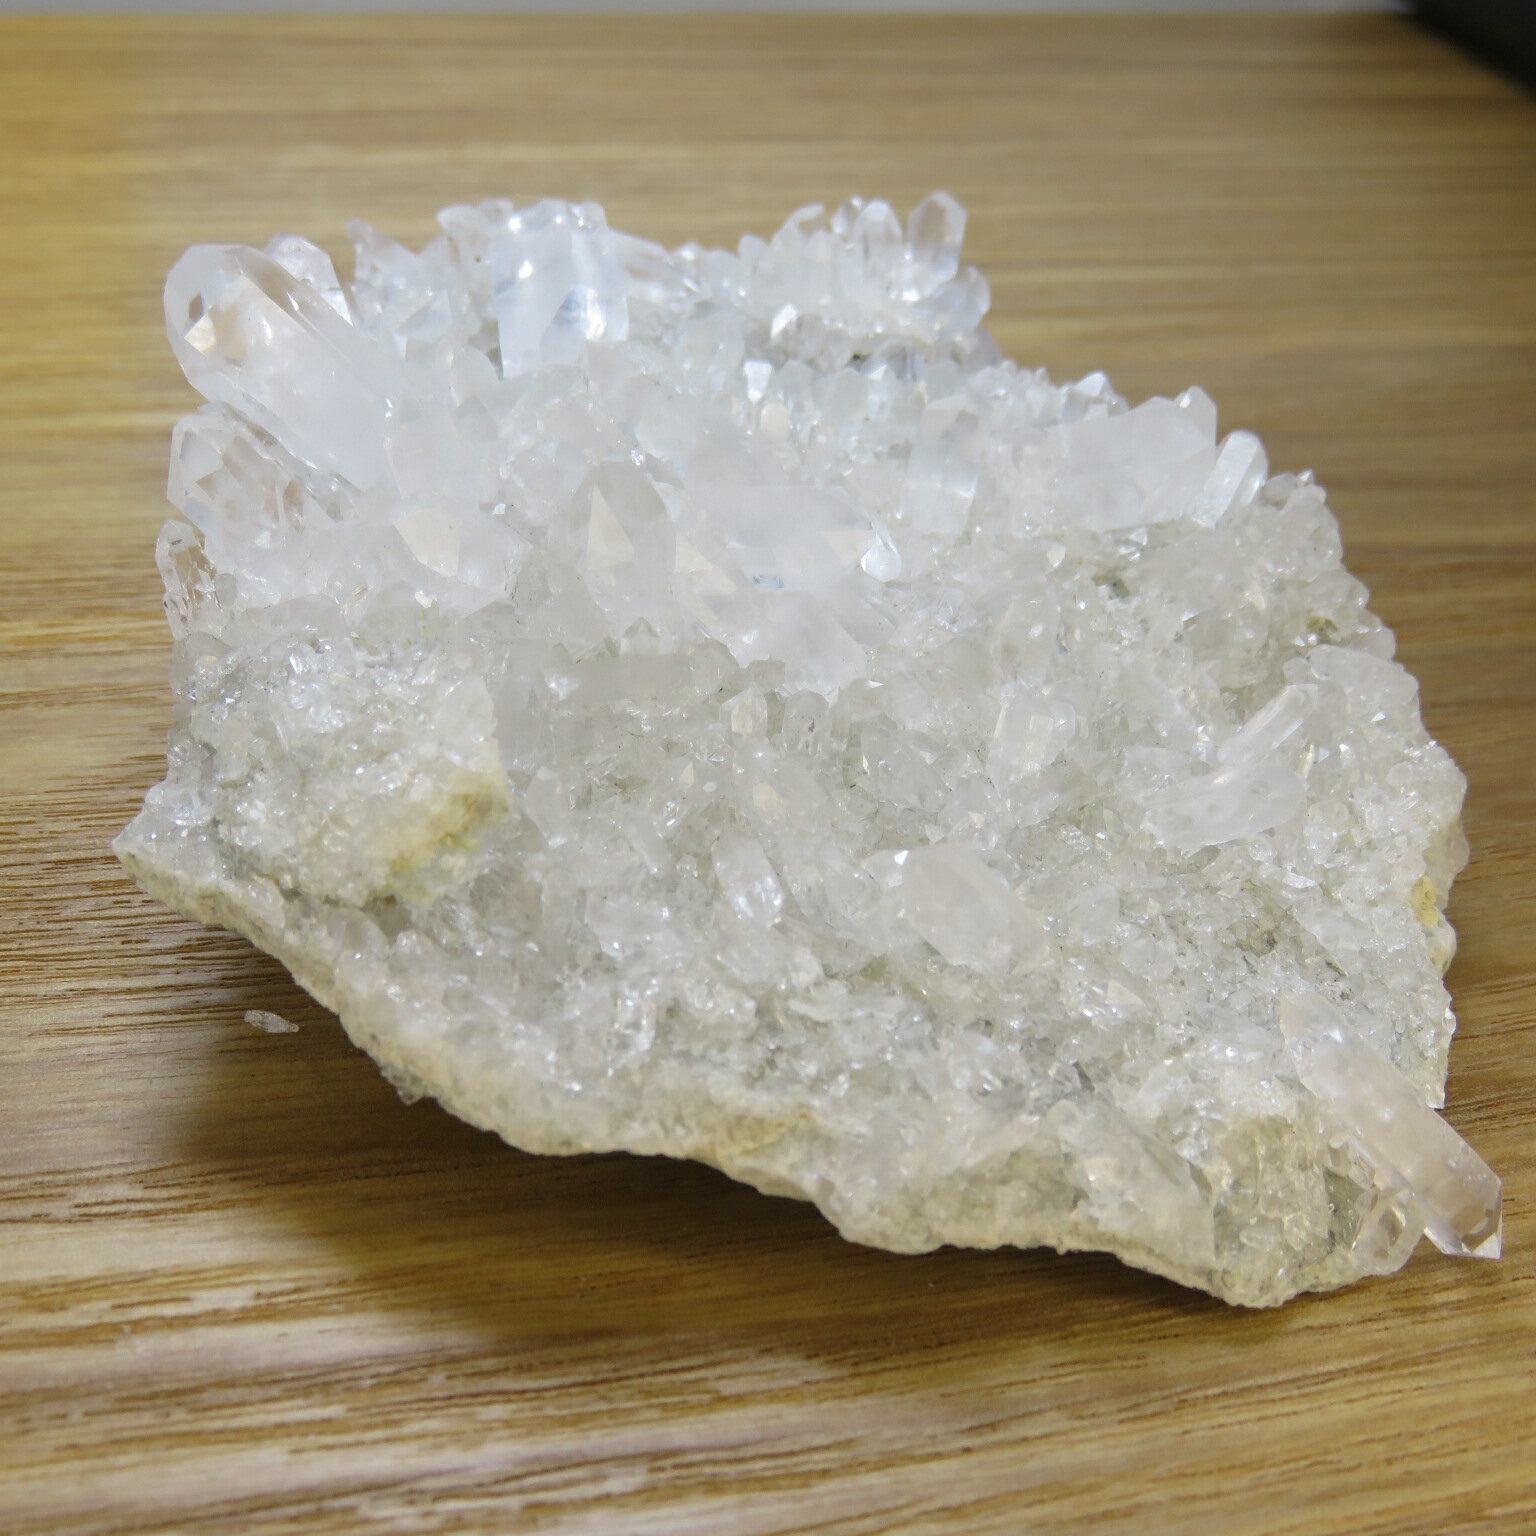 ミナスジェライス州の中央部に位置するトマス・ゴンザガ産の水晶は、数あるブラジルの水晶の産地の中でも特に美しい結晶が産出される事で知られる最高峰の産地です。 透明度、艶、輝き、結晶の形とどれをとっても一級品とされています。 しかしながら近年は...